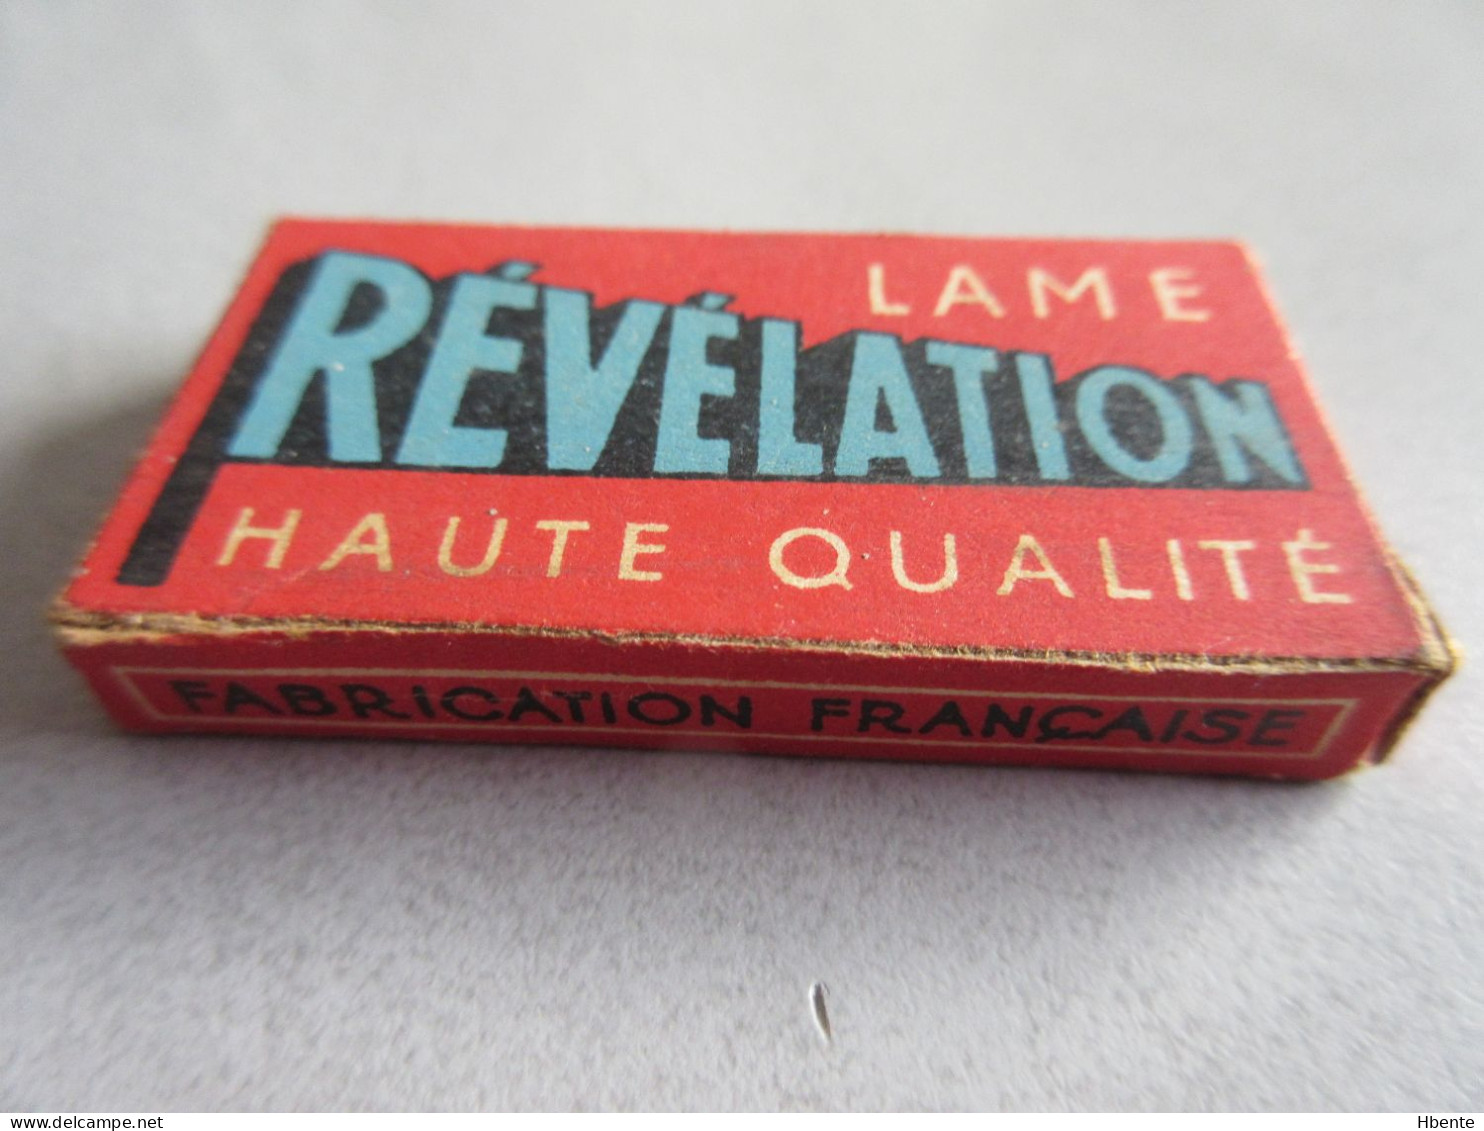 Boite Complète De 5 Lames De Rasoir REVELATION Haute Qualité - Complet Box Of 5 Rasor Blades - Lames De Rasoir